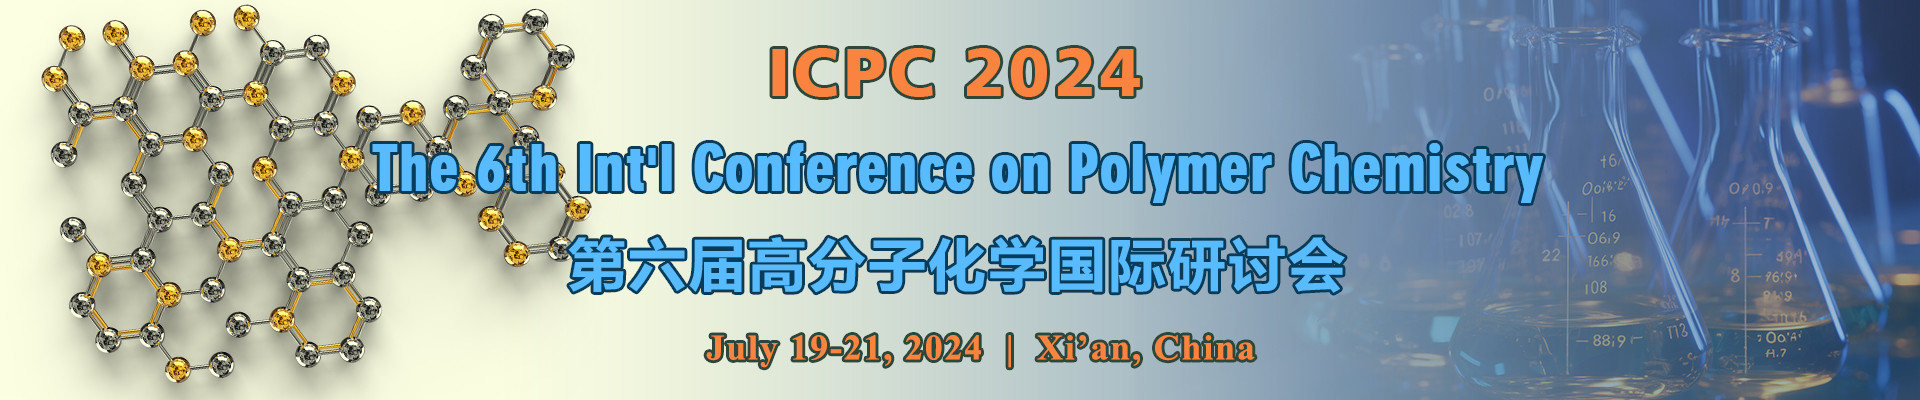 第六届高分子化学国际研讨会 (ICPC 2024) 